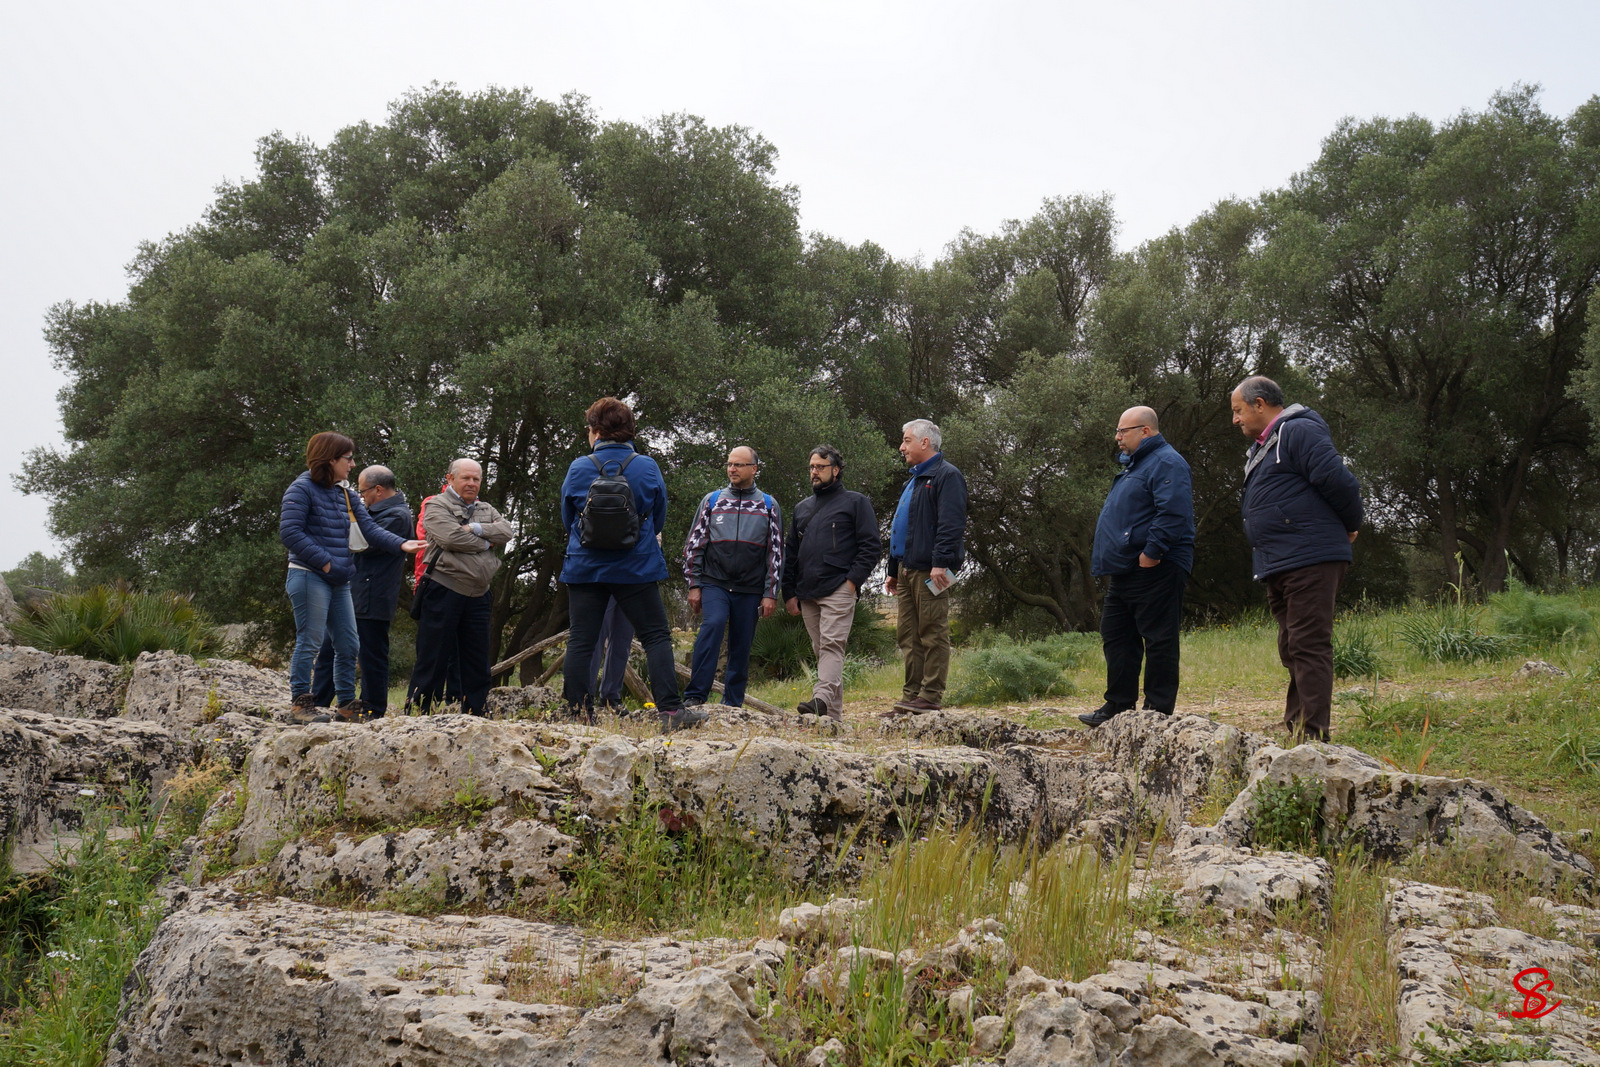 Gruppo Archeologico Selinunte: Visita alle Cave di Cusa